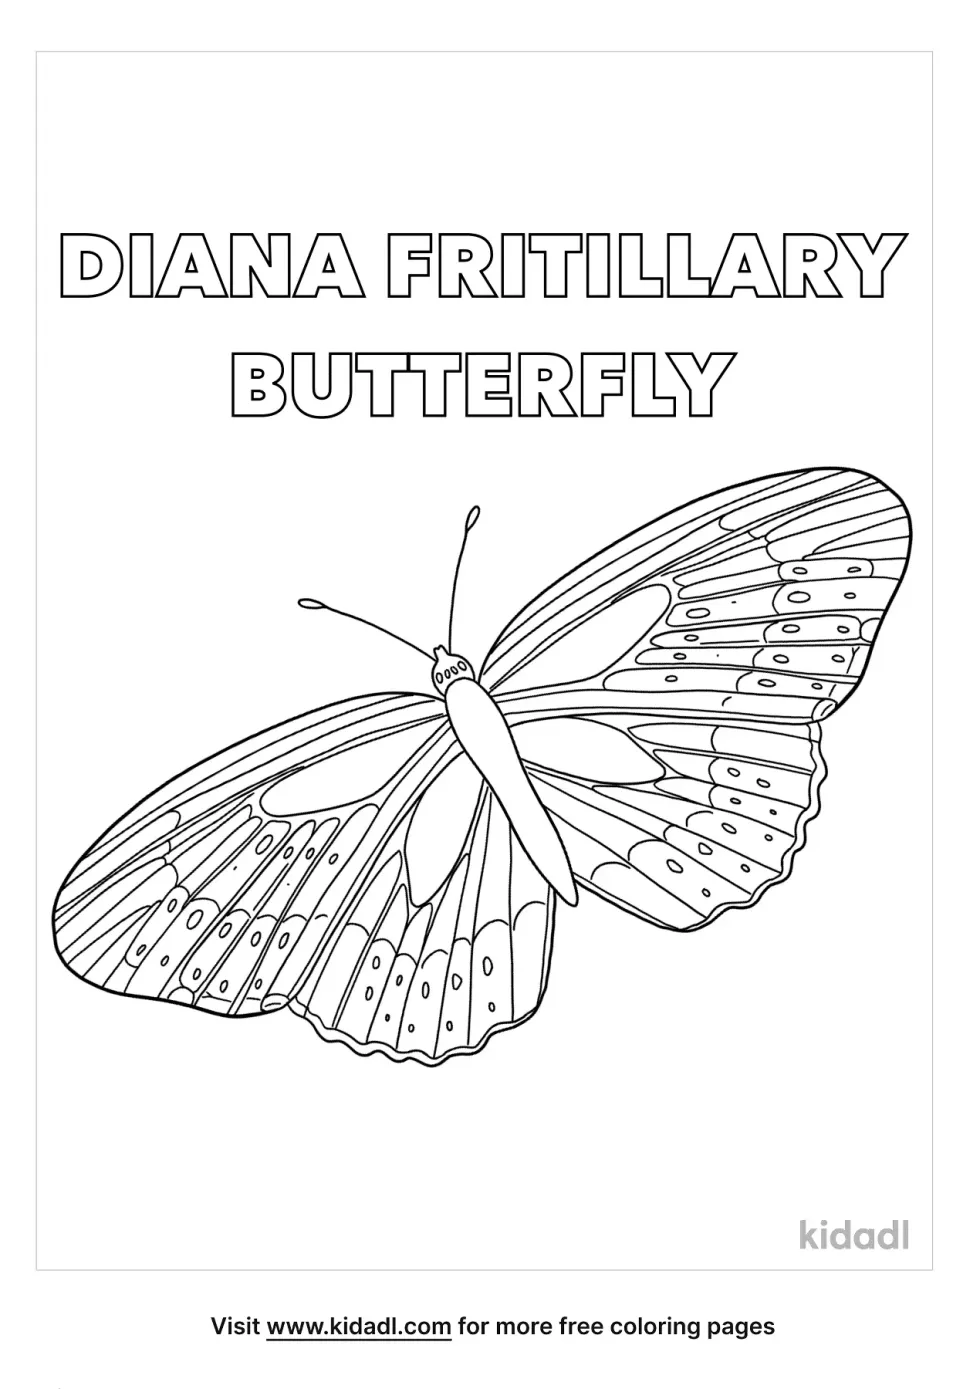 Diana Fritillary Butterfly